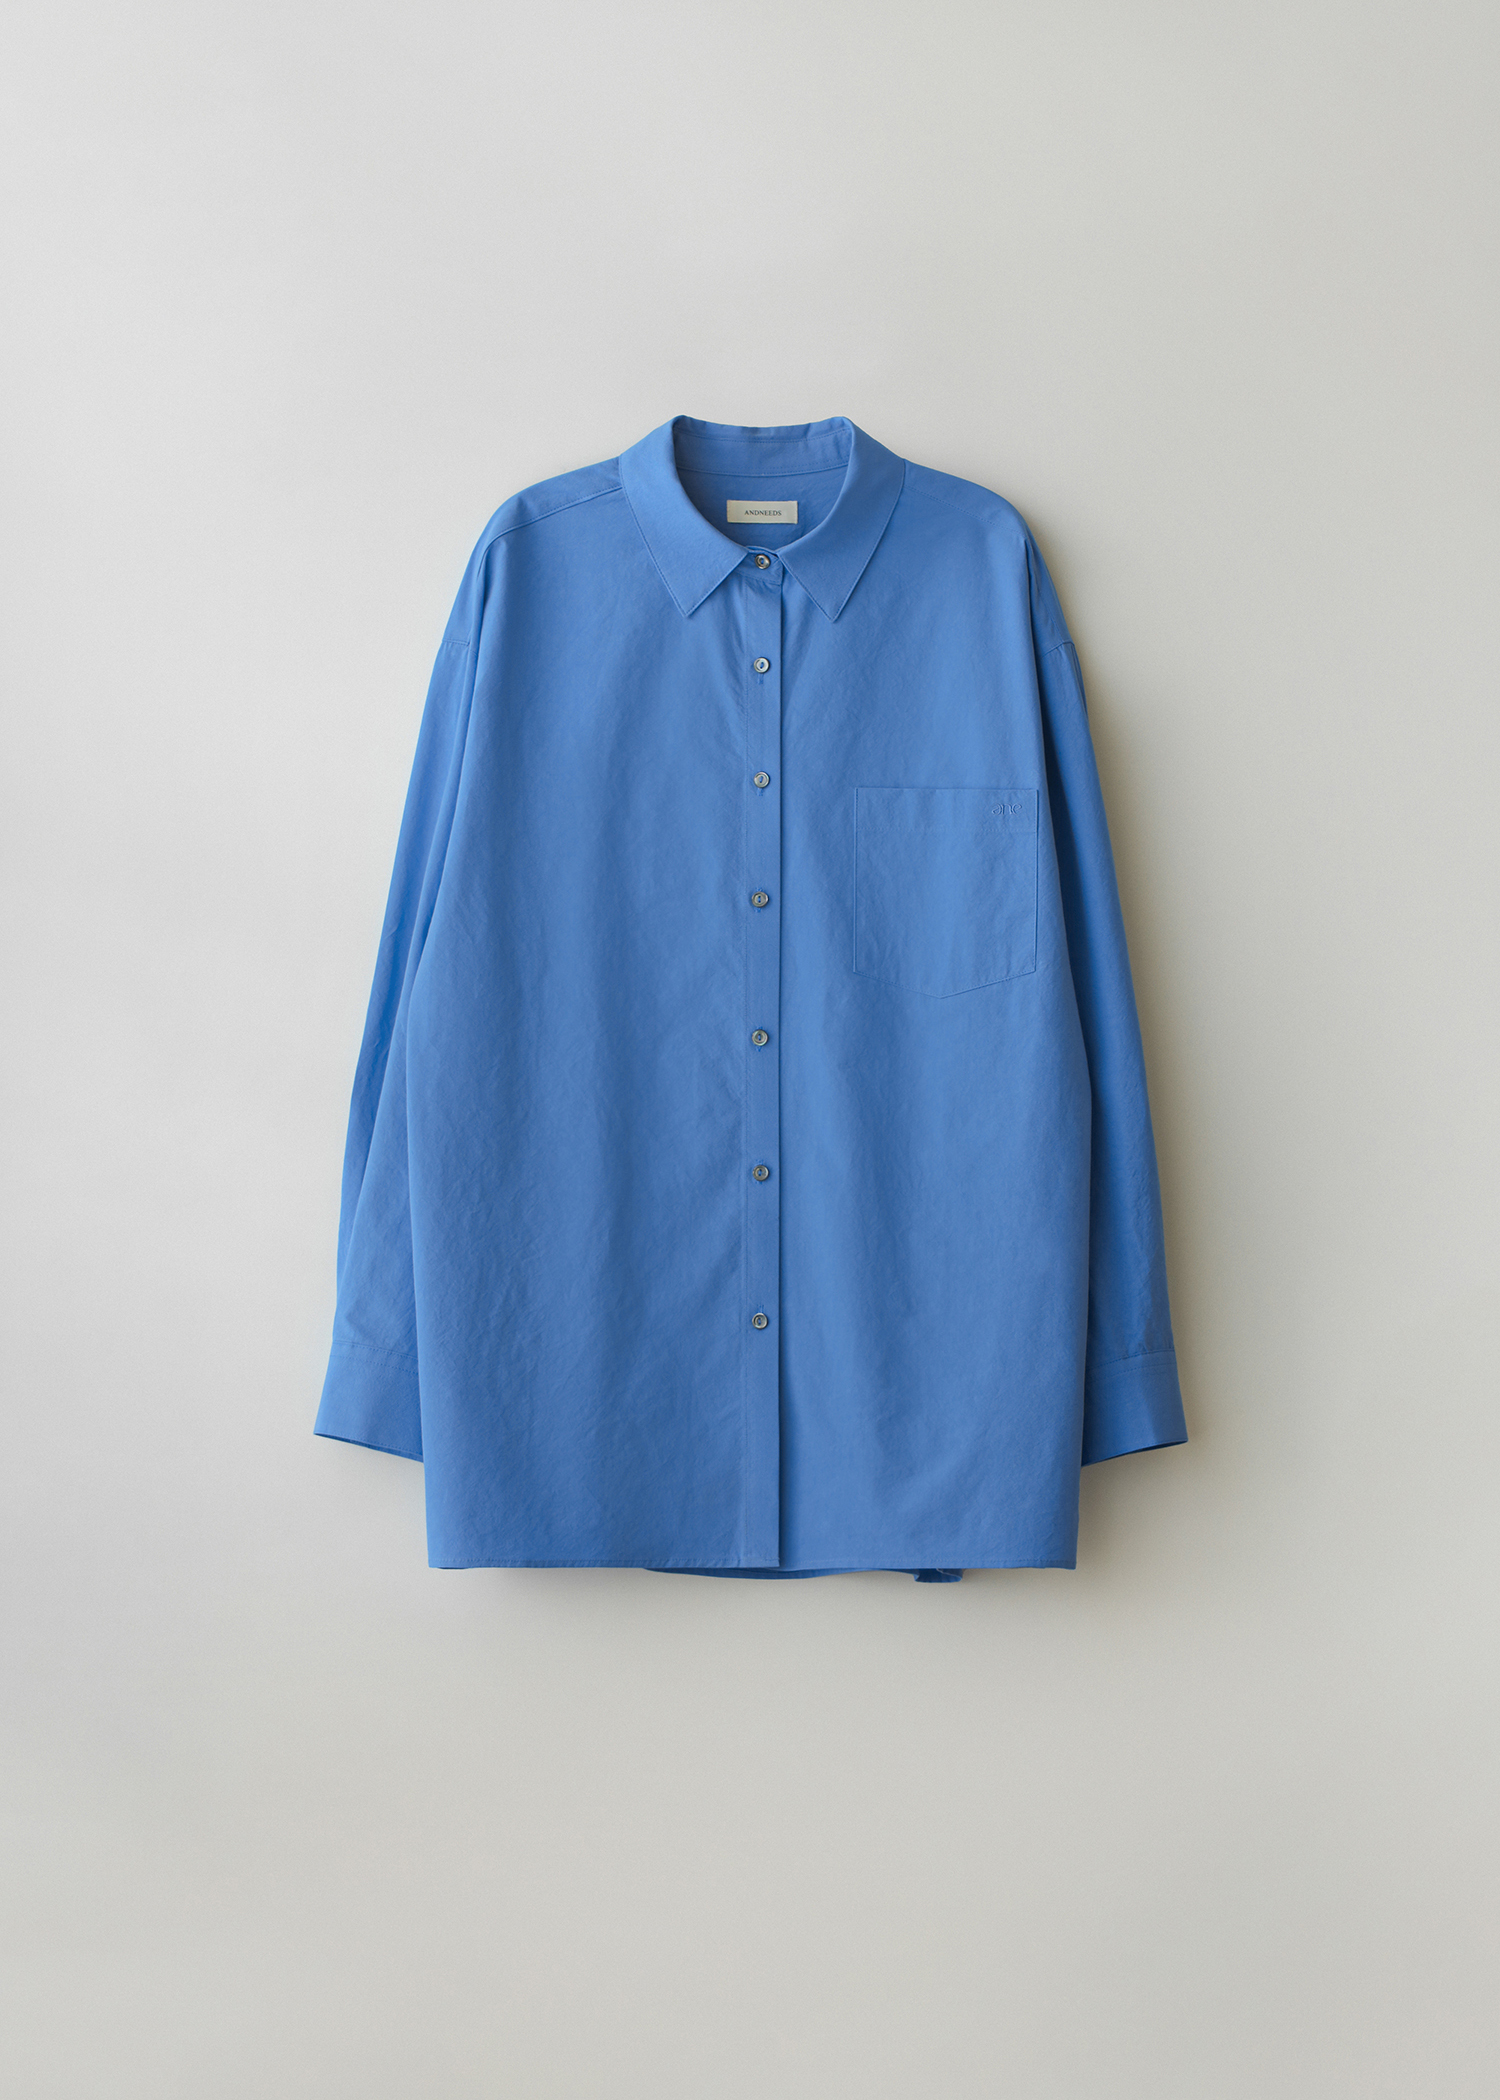 Bio cotton shirt (blue)